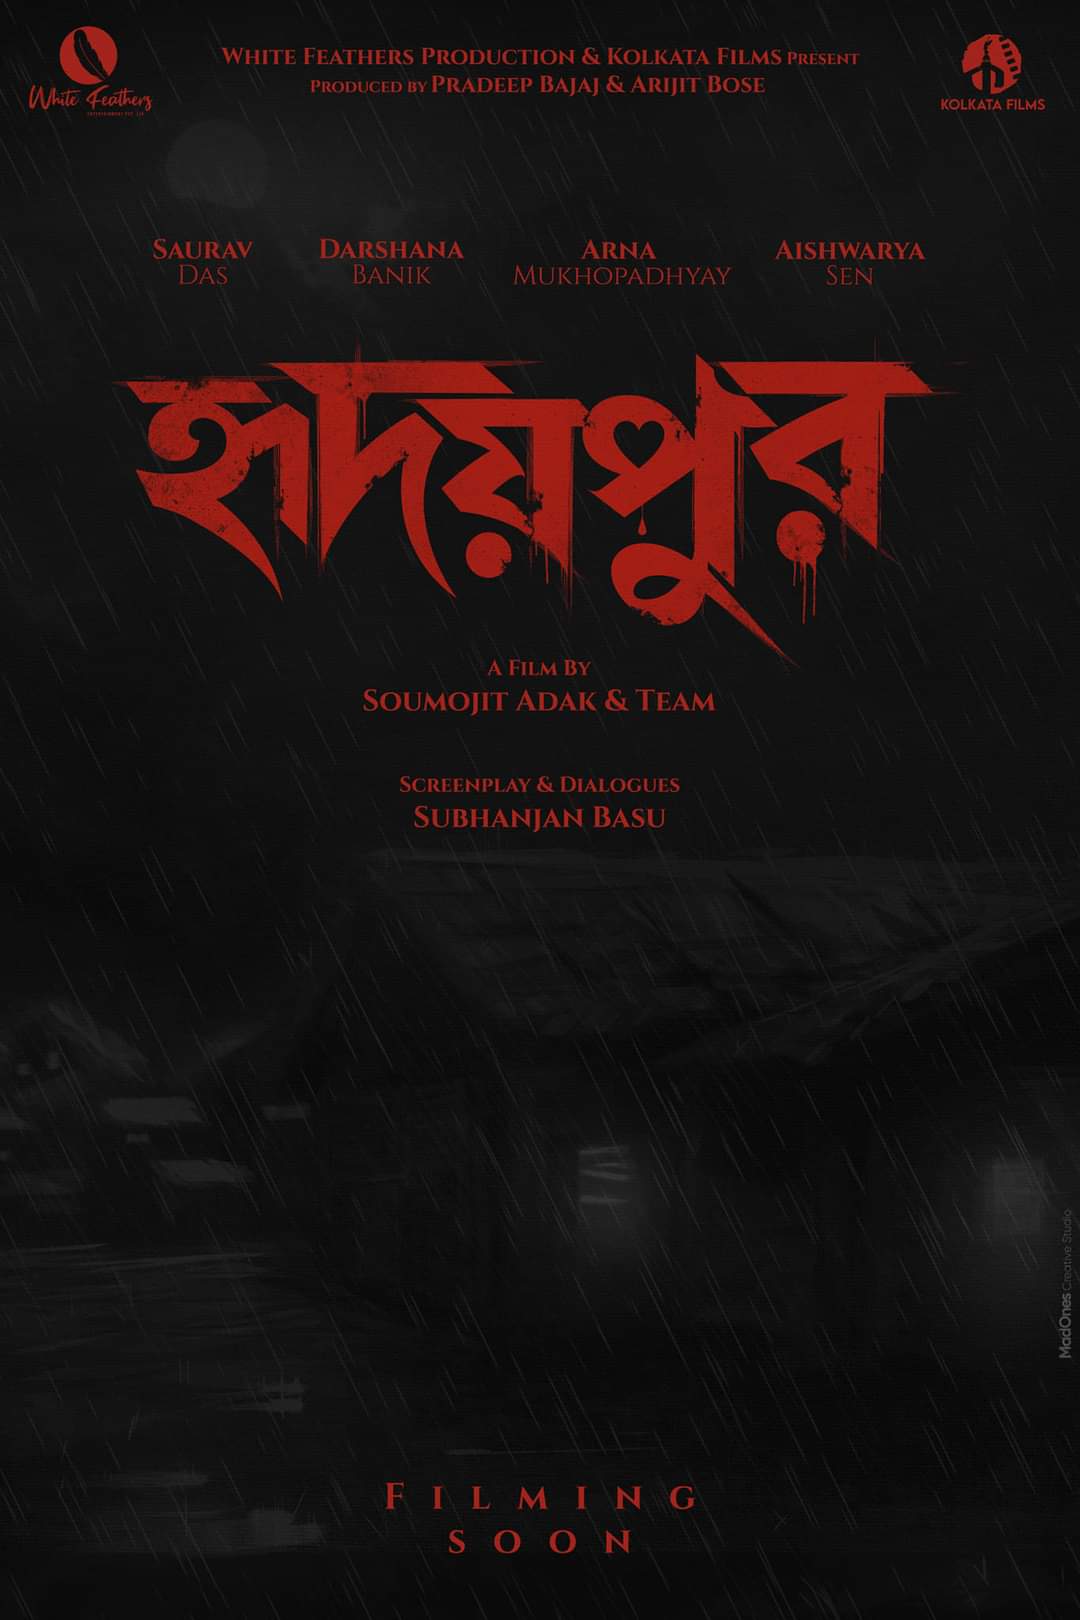 Saurav Das Darshana Banik to be seen in new Bengali film Hridaypur